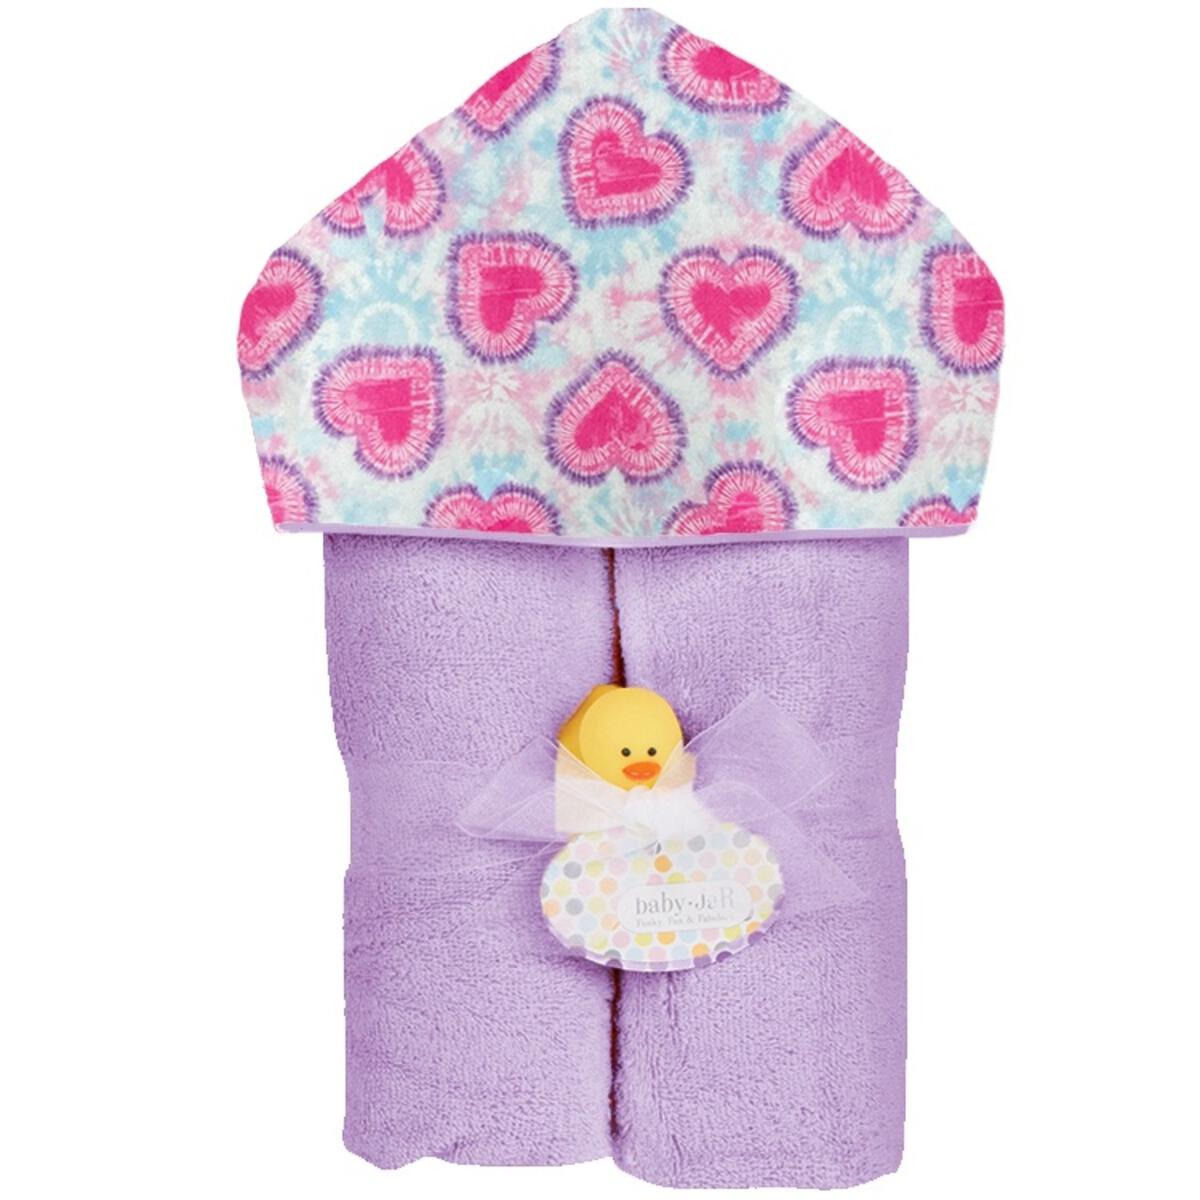 Tie Dye Heart Plush Deluxe Hooded Towel - Twinkle Twinkle Little One